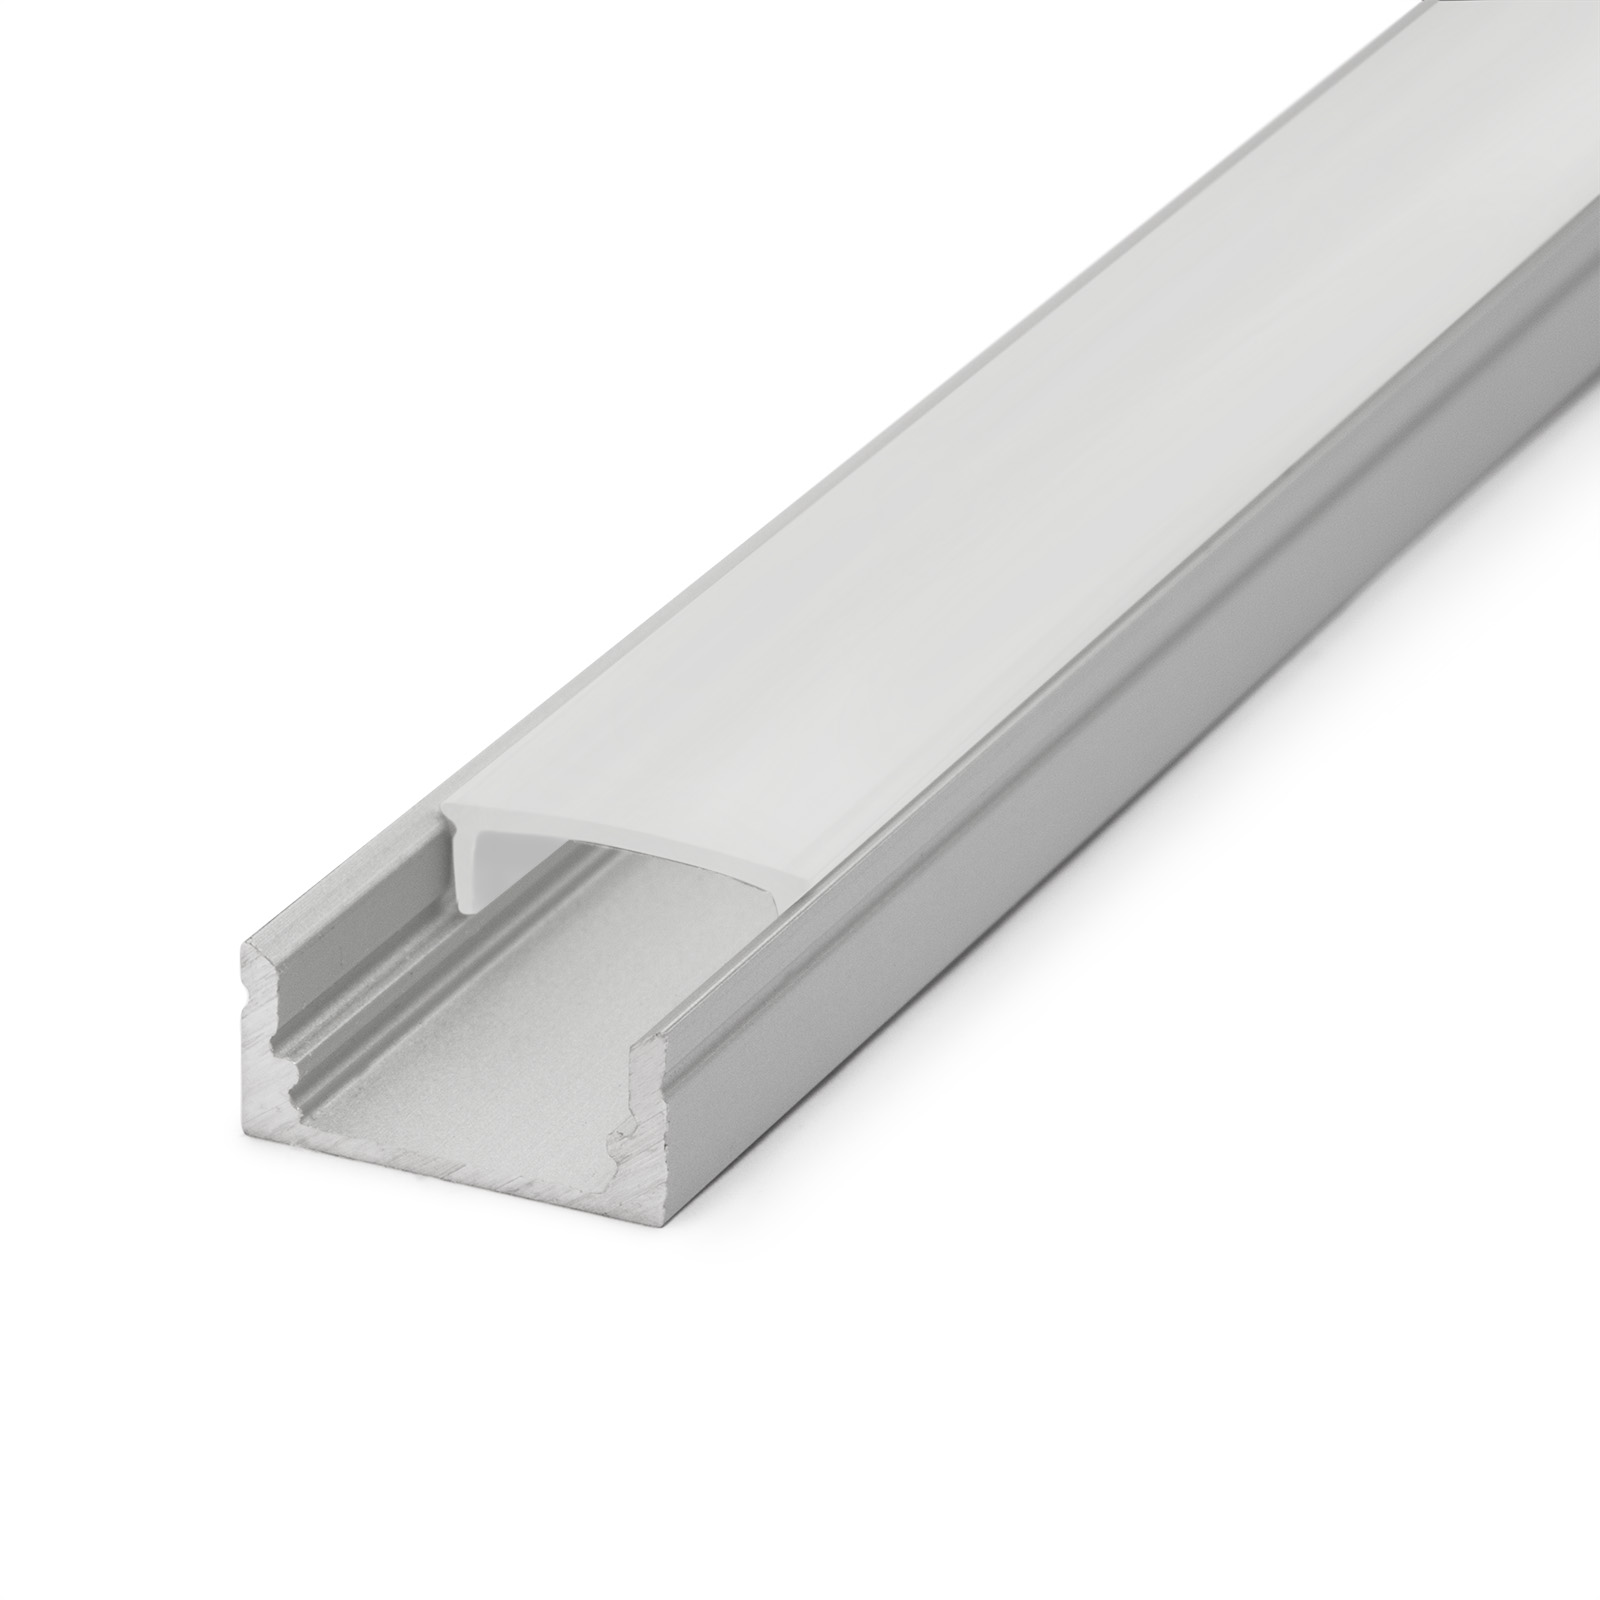 Aluminium Profile Track for LED thumb